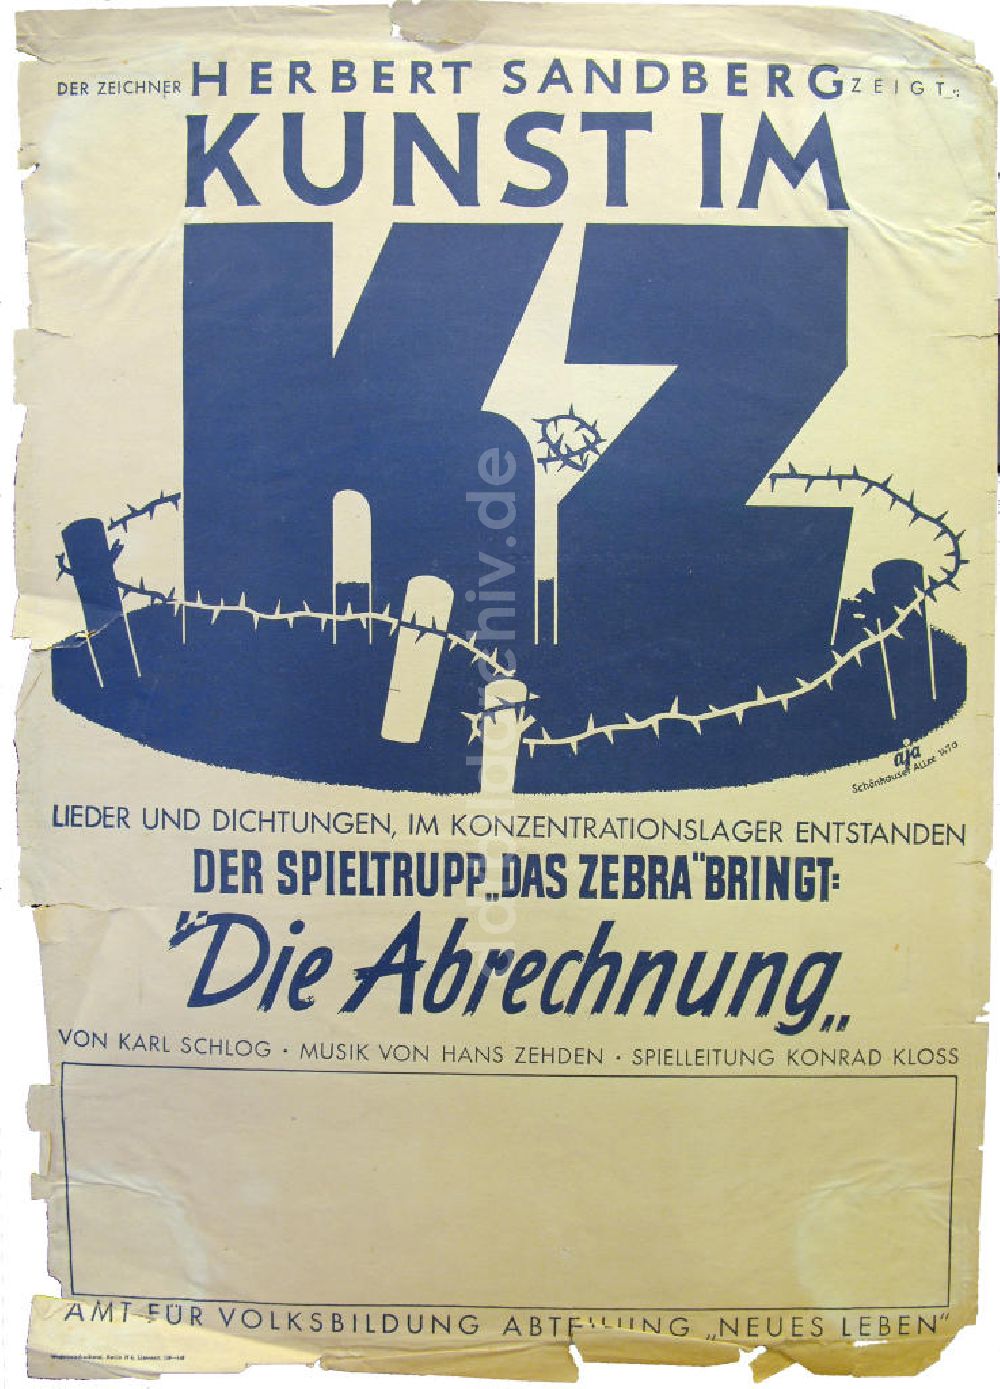 Berlin: Plakat von der Ausstellung Der Zeichner Herbert Sandberg zeigt: Kunst im KZ